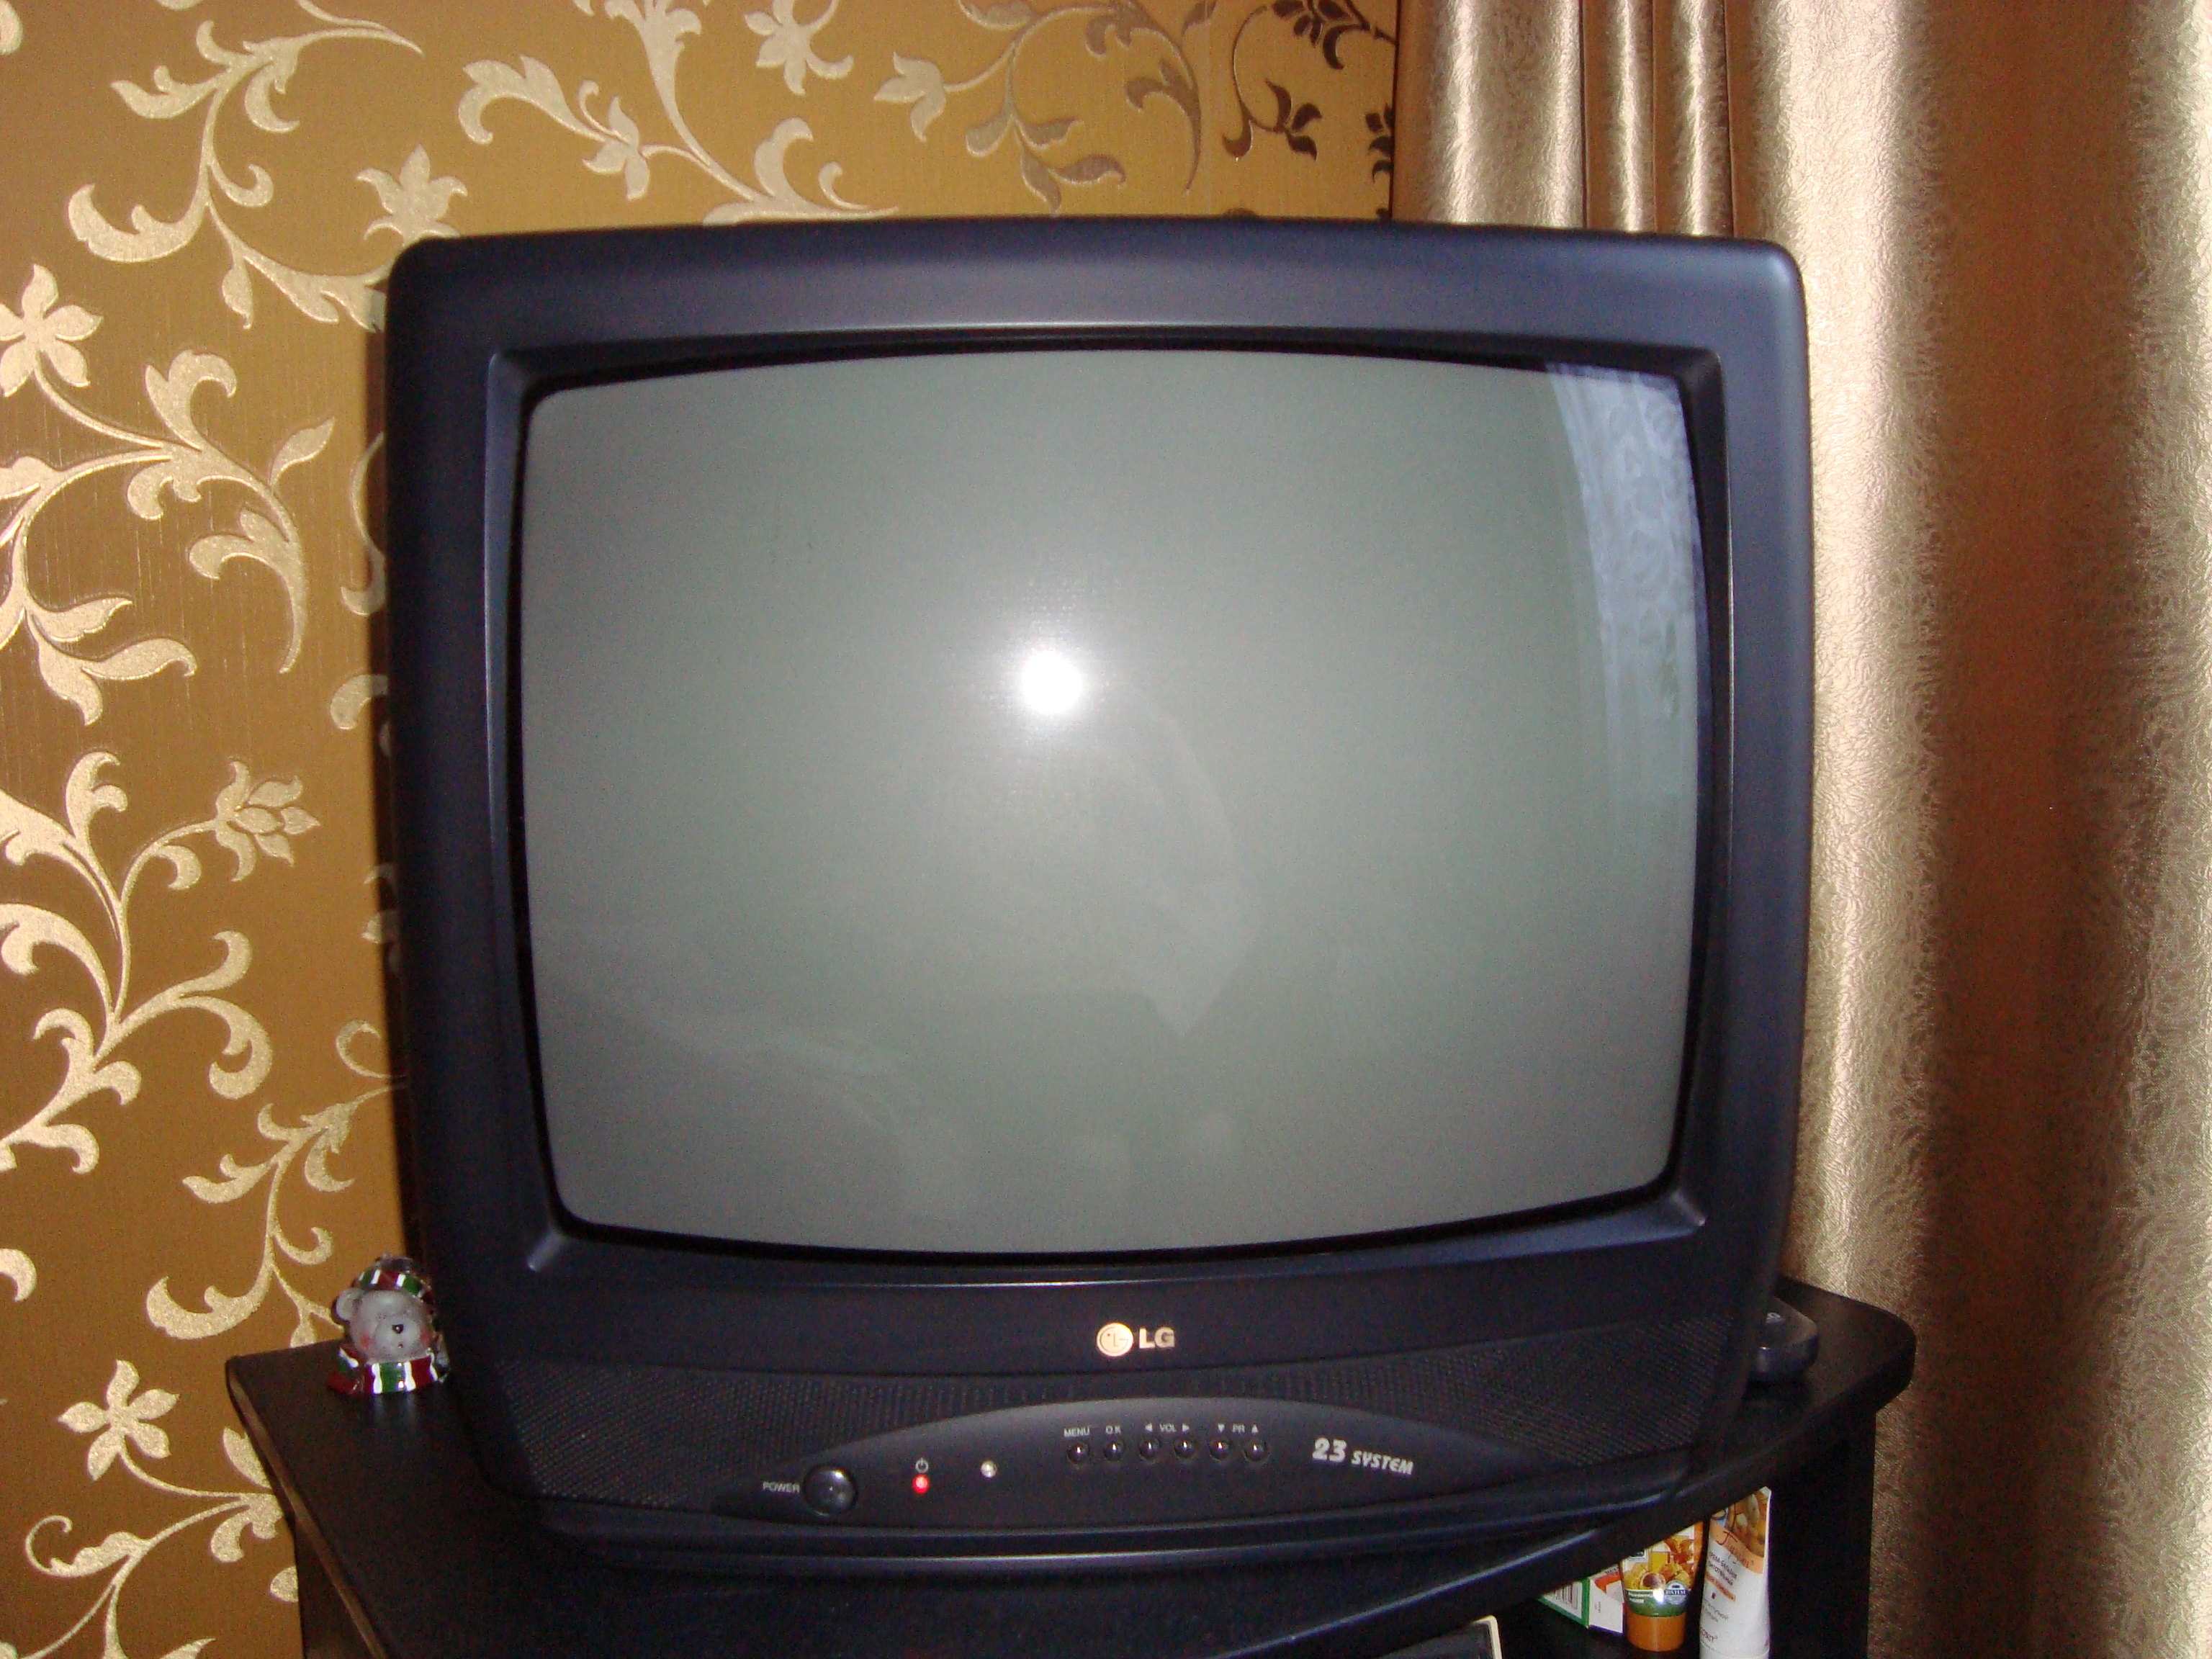 Авито саратов телевизоры. LG 21 дюйм кинескопный. Телевизор LG 21 дюйм кинескопный. Телевизор LG CF-21f39. LG CF 20f30.